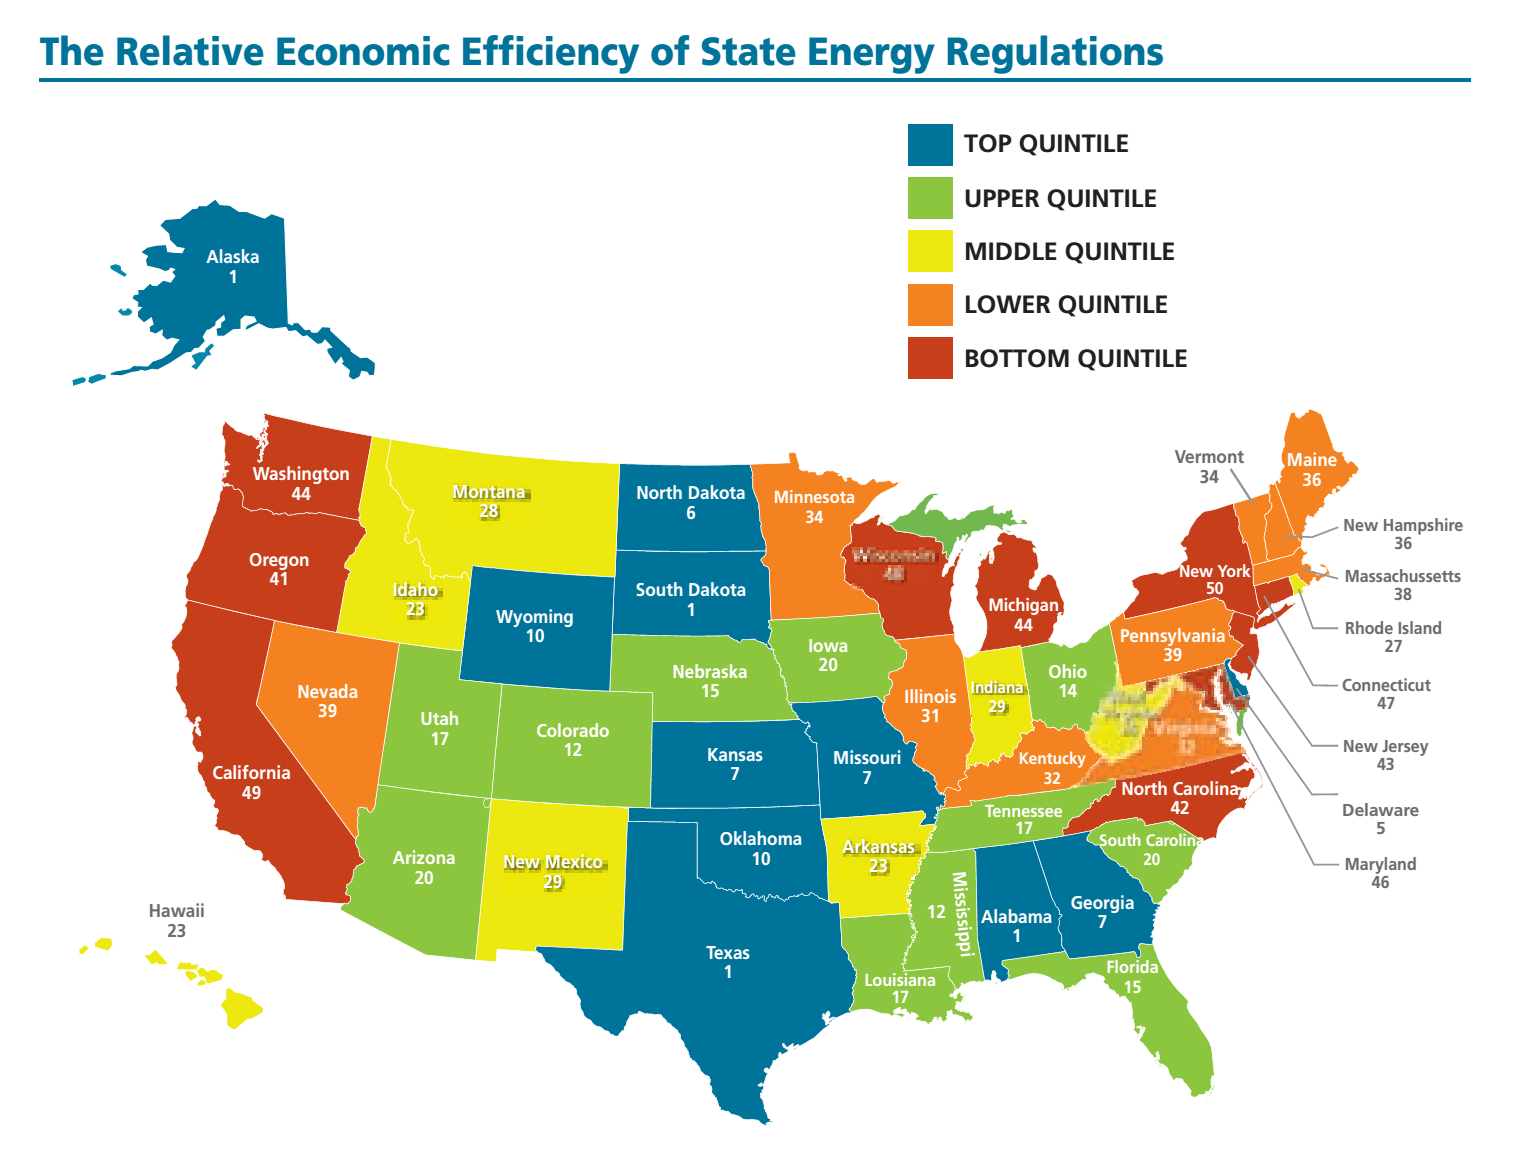 La eficiencia económica relativa de las regulaciones energéticas de cada Estado.